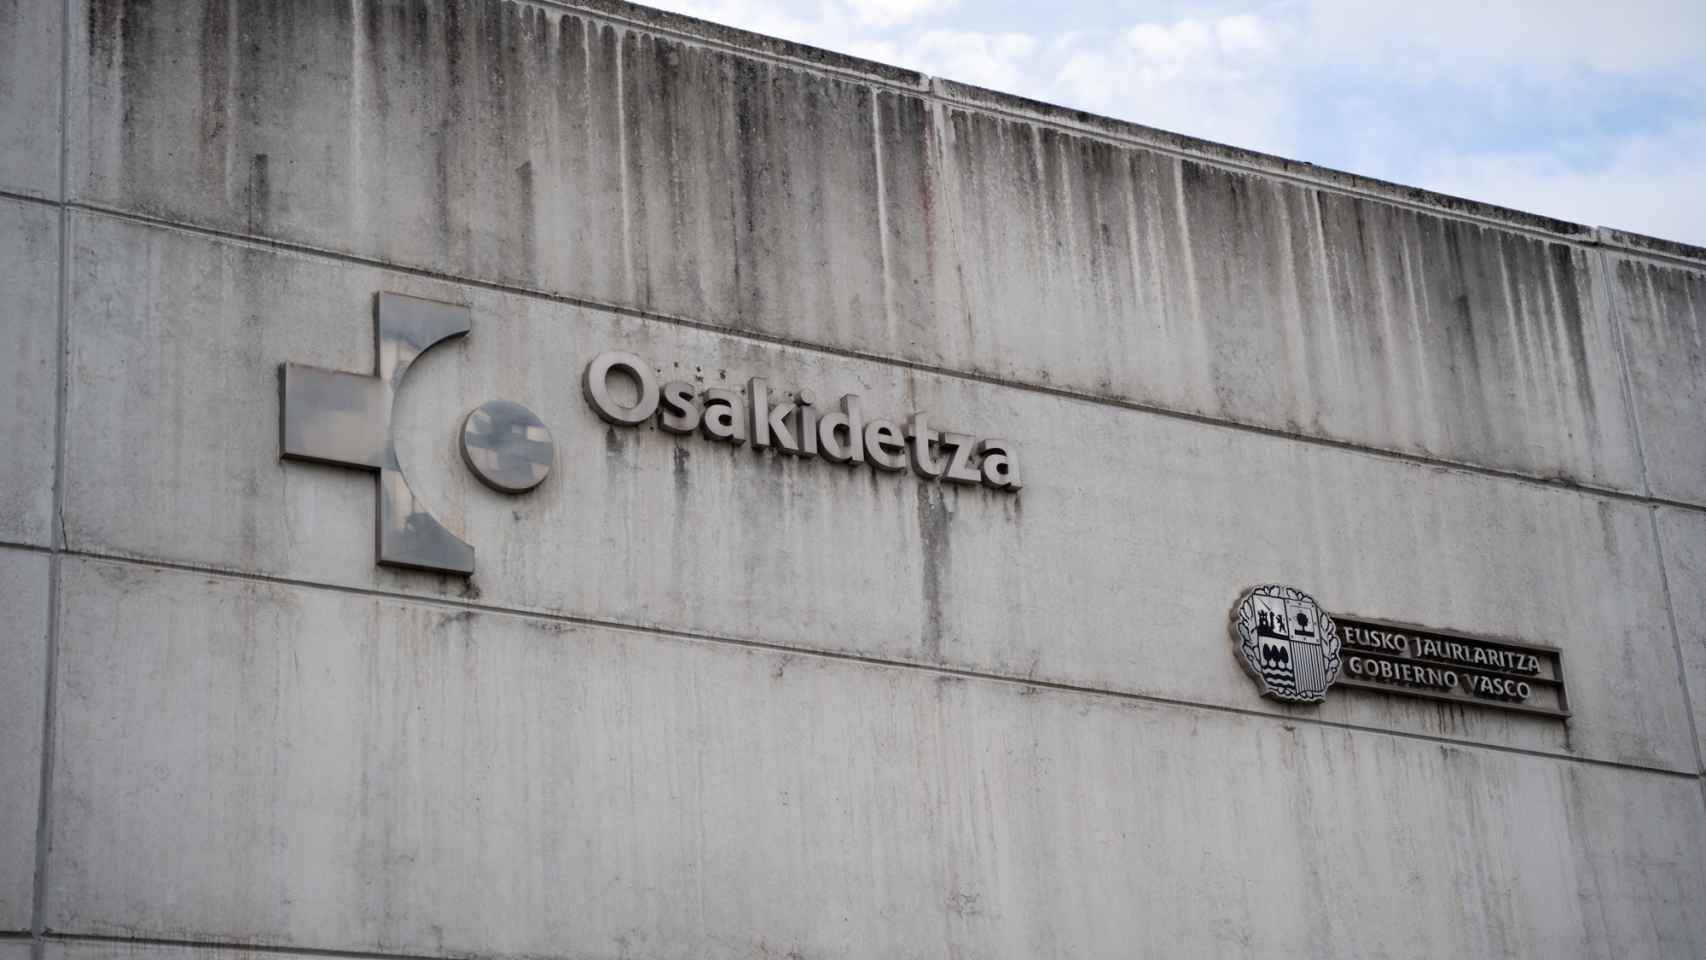 Los Presupuestos Generales de Euskadi dedican 4.896,6M€ a Osakidetza, casi un tercio del total / LUIS MIGUEL AÑÓN